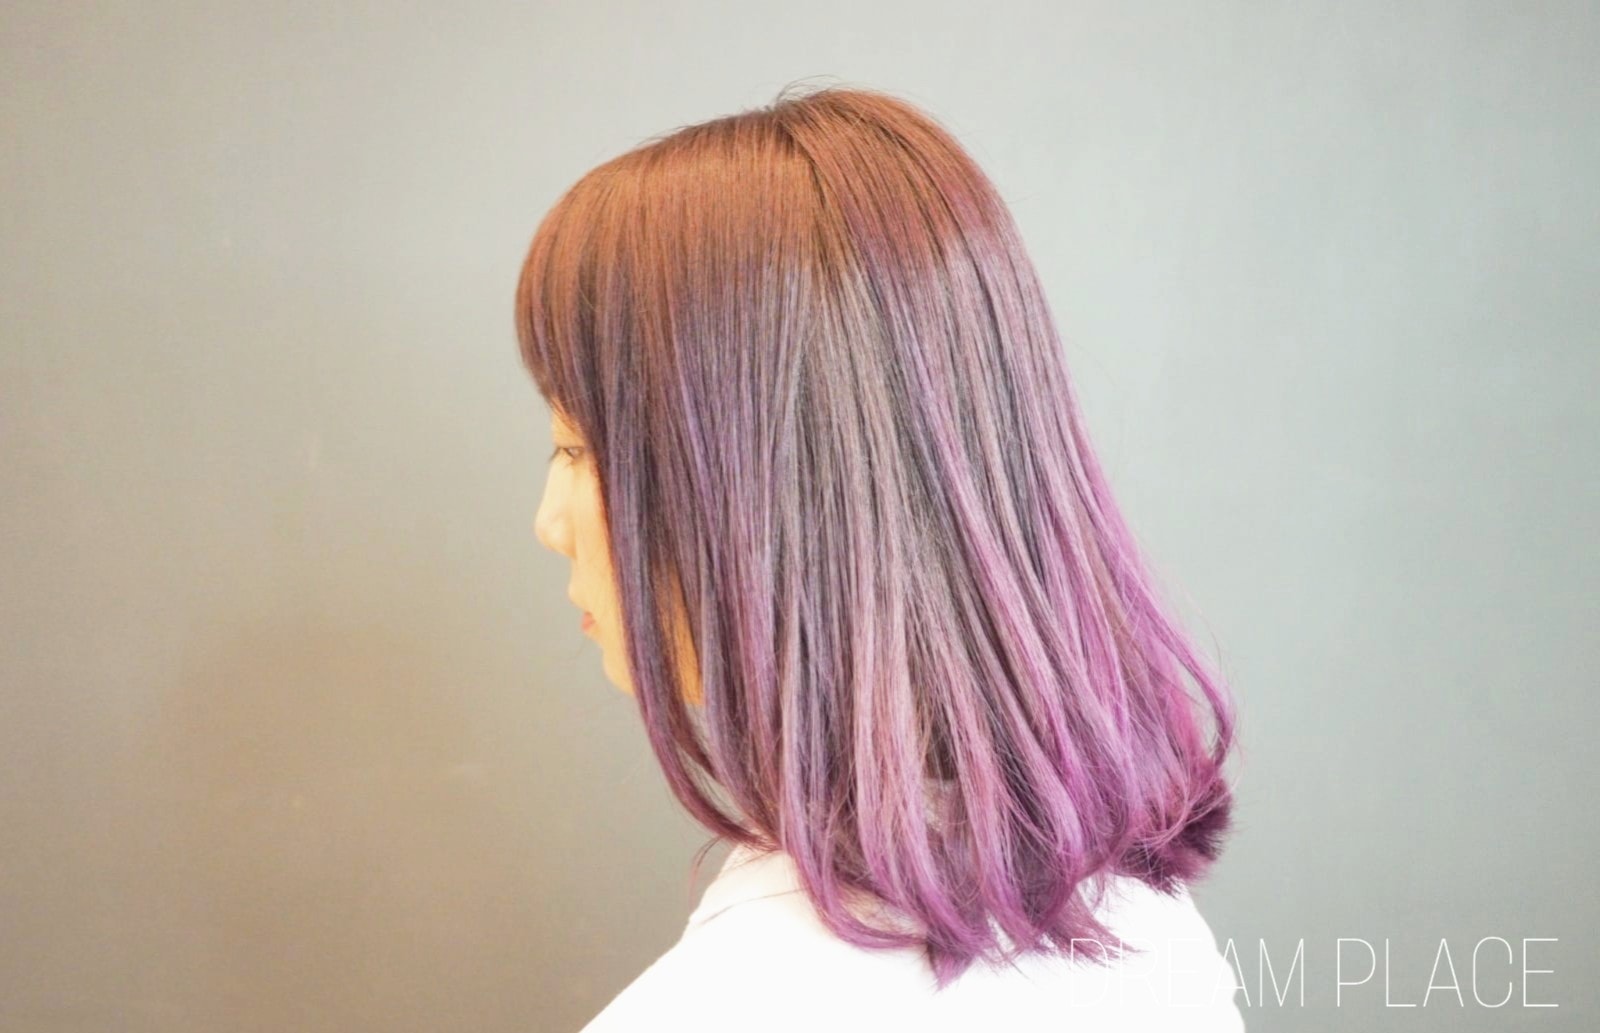 髮型作品参考:深淺漸變紫色